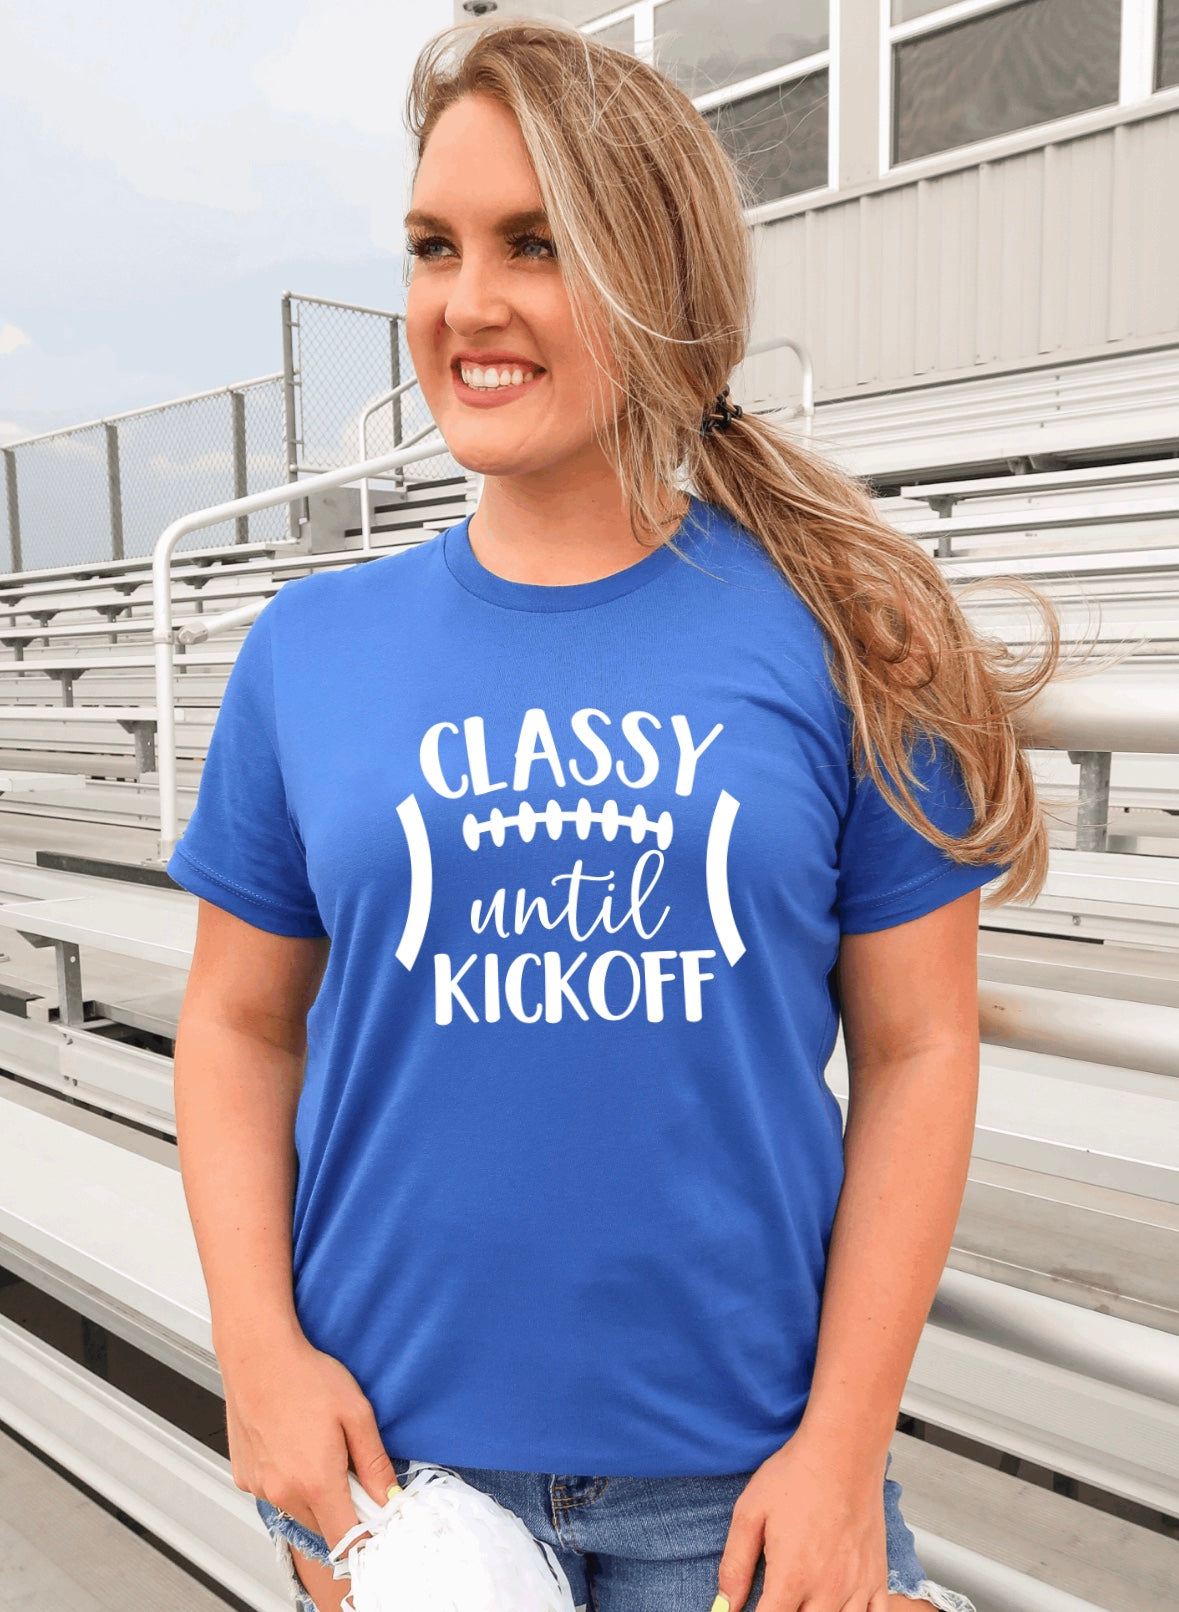 Classy until kickoff t-shirt 